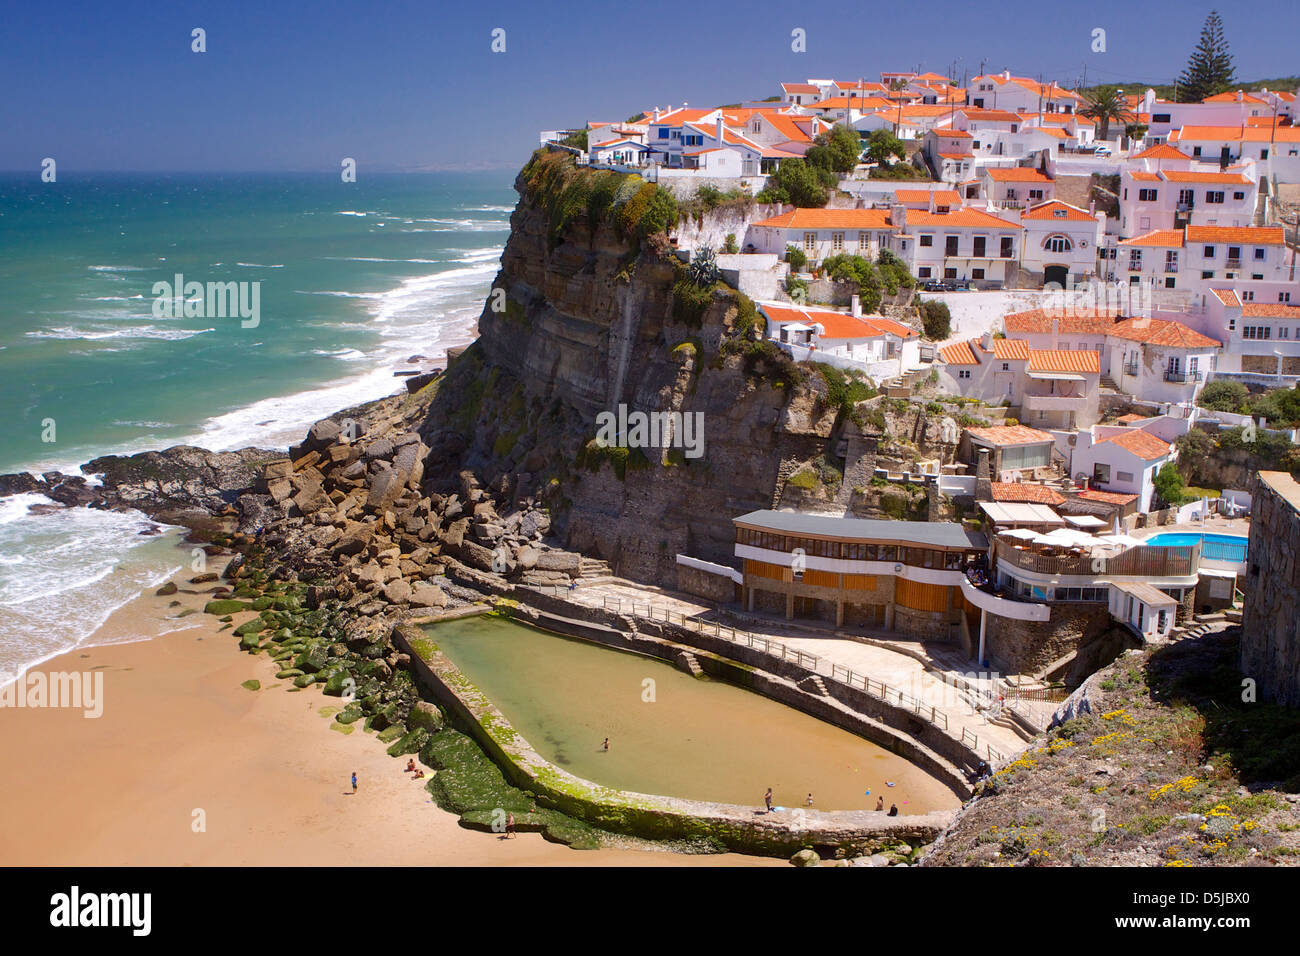 Azenhas do Mar Colares Portugal travel destination Stock Photo